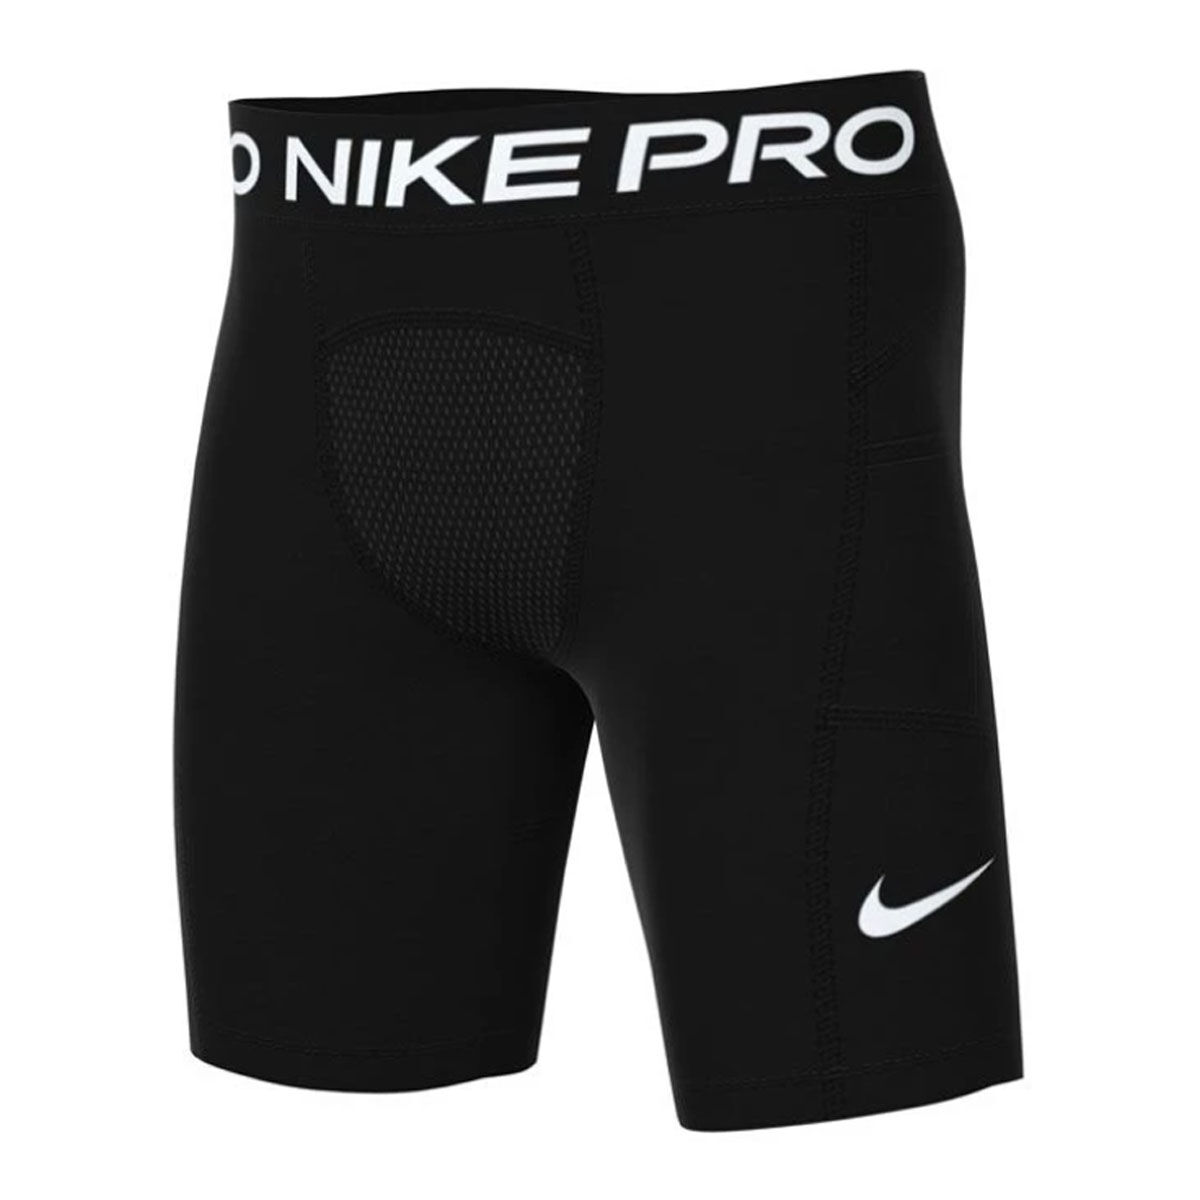 Nike / Pro Boys' Dri-FIT Core Compression Shorts